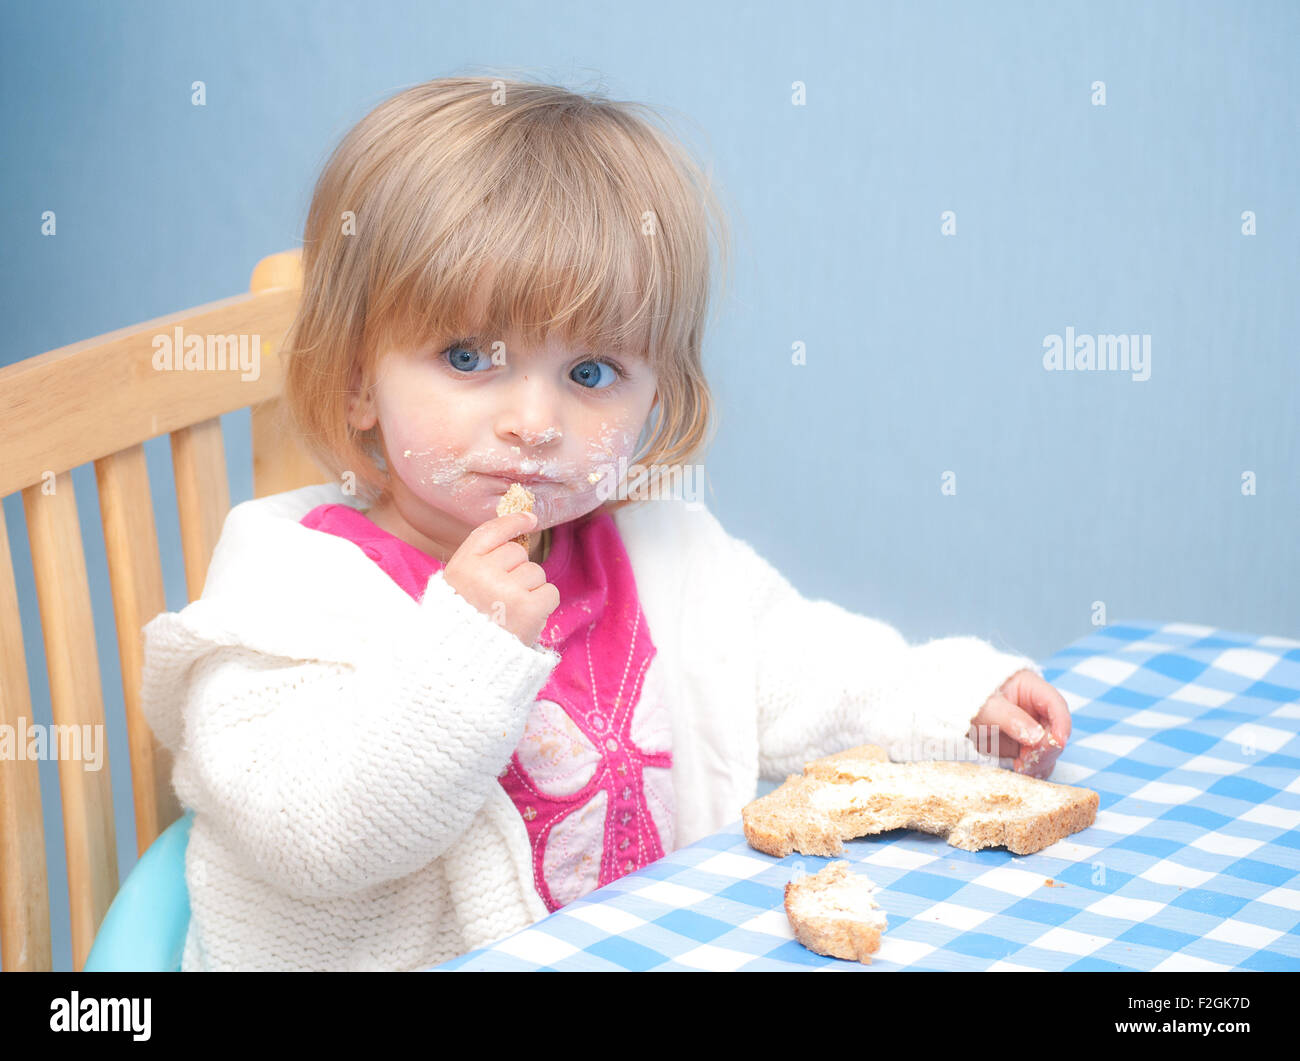 Сливочное масло девочка. Ребенок ест сливочное масло. Ребенок ест хлеб с маслом. Девочка ест масло. Детки едят масло.